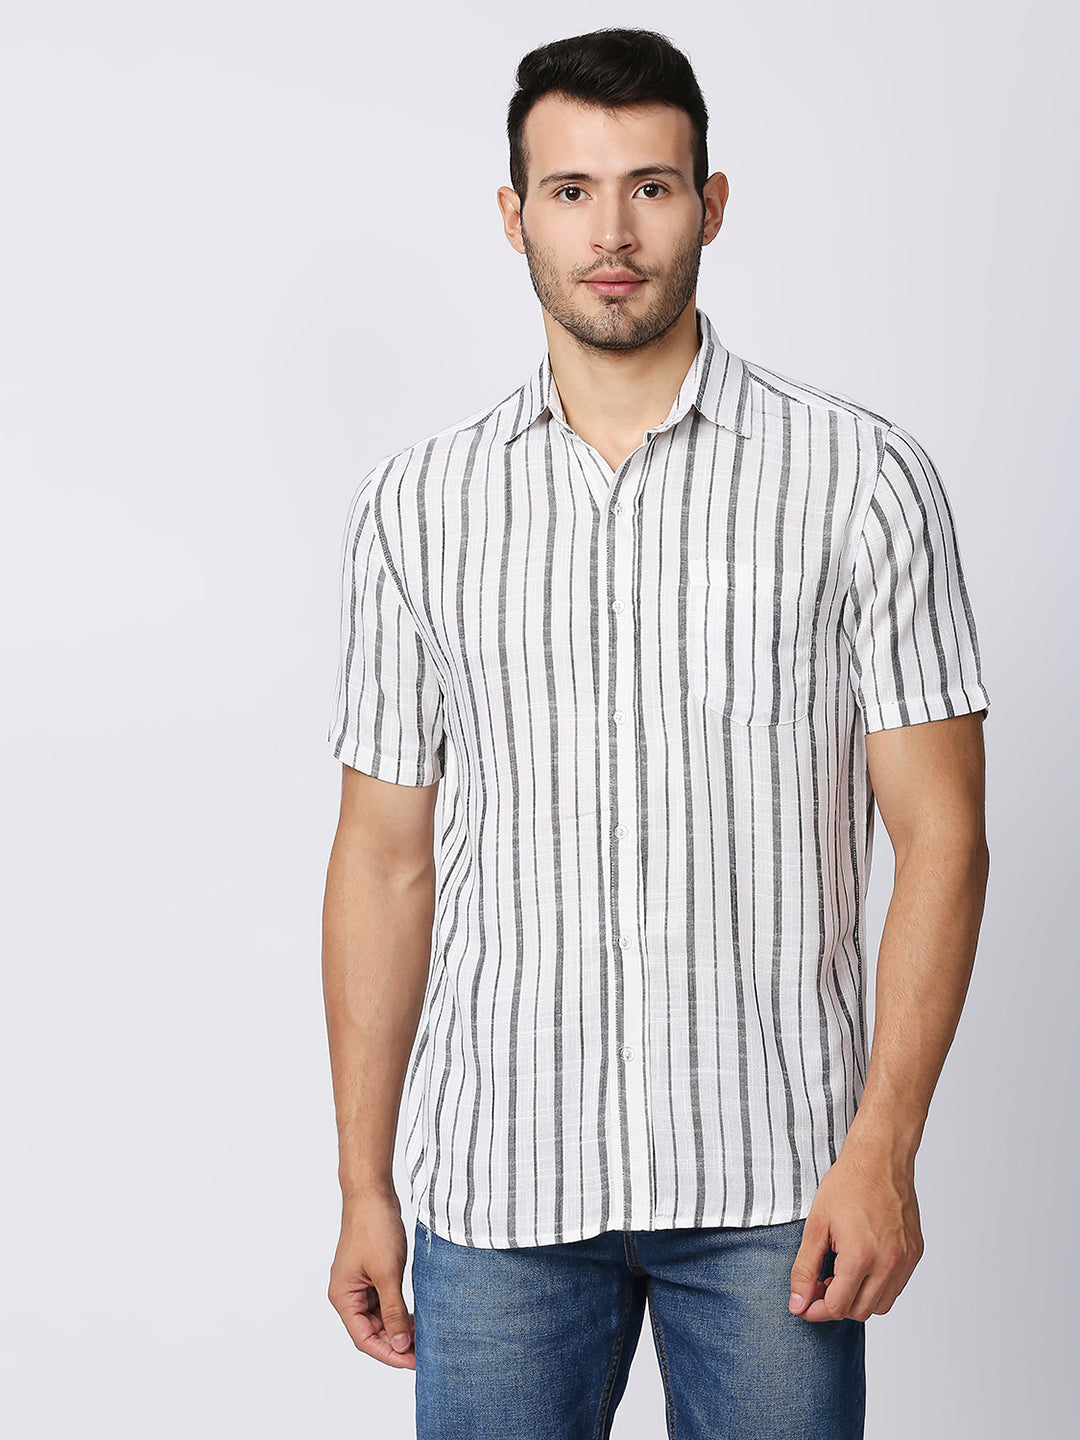 Dazzle White Large Stripes Shirt